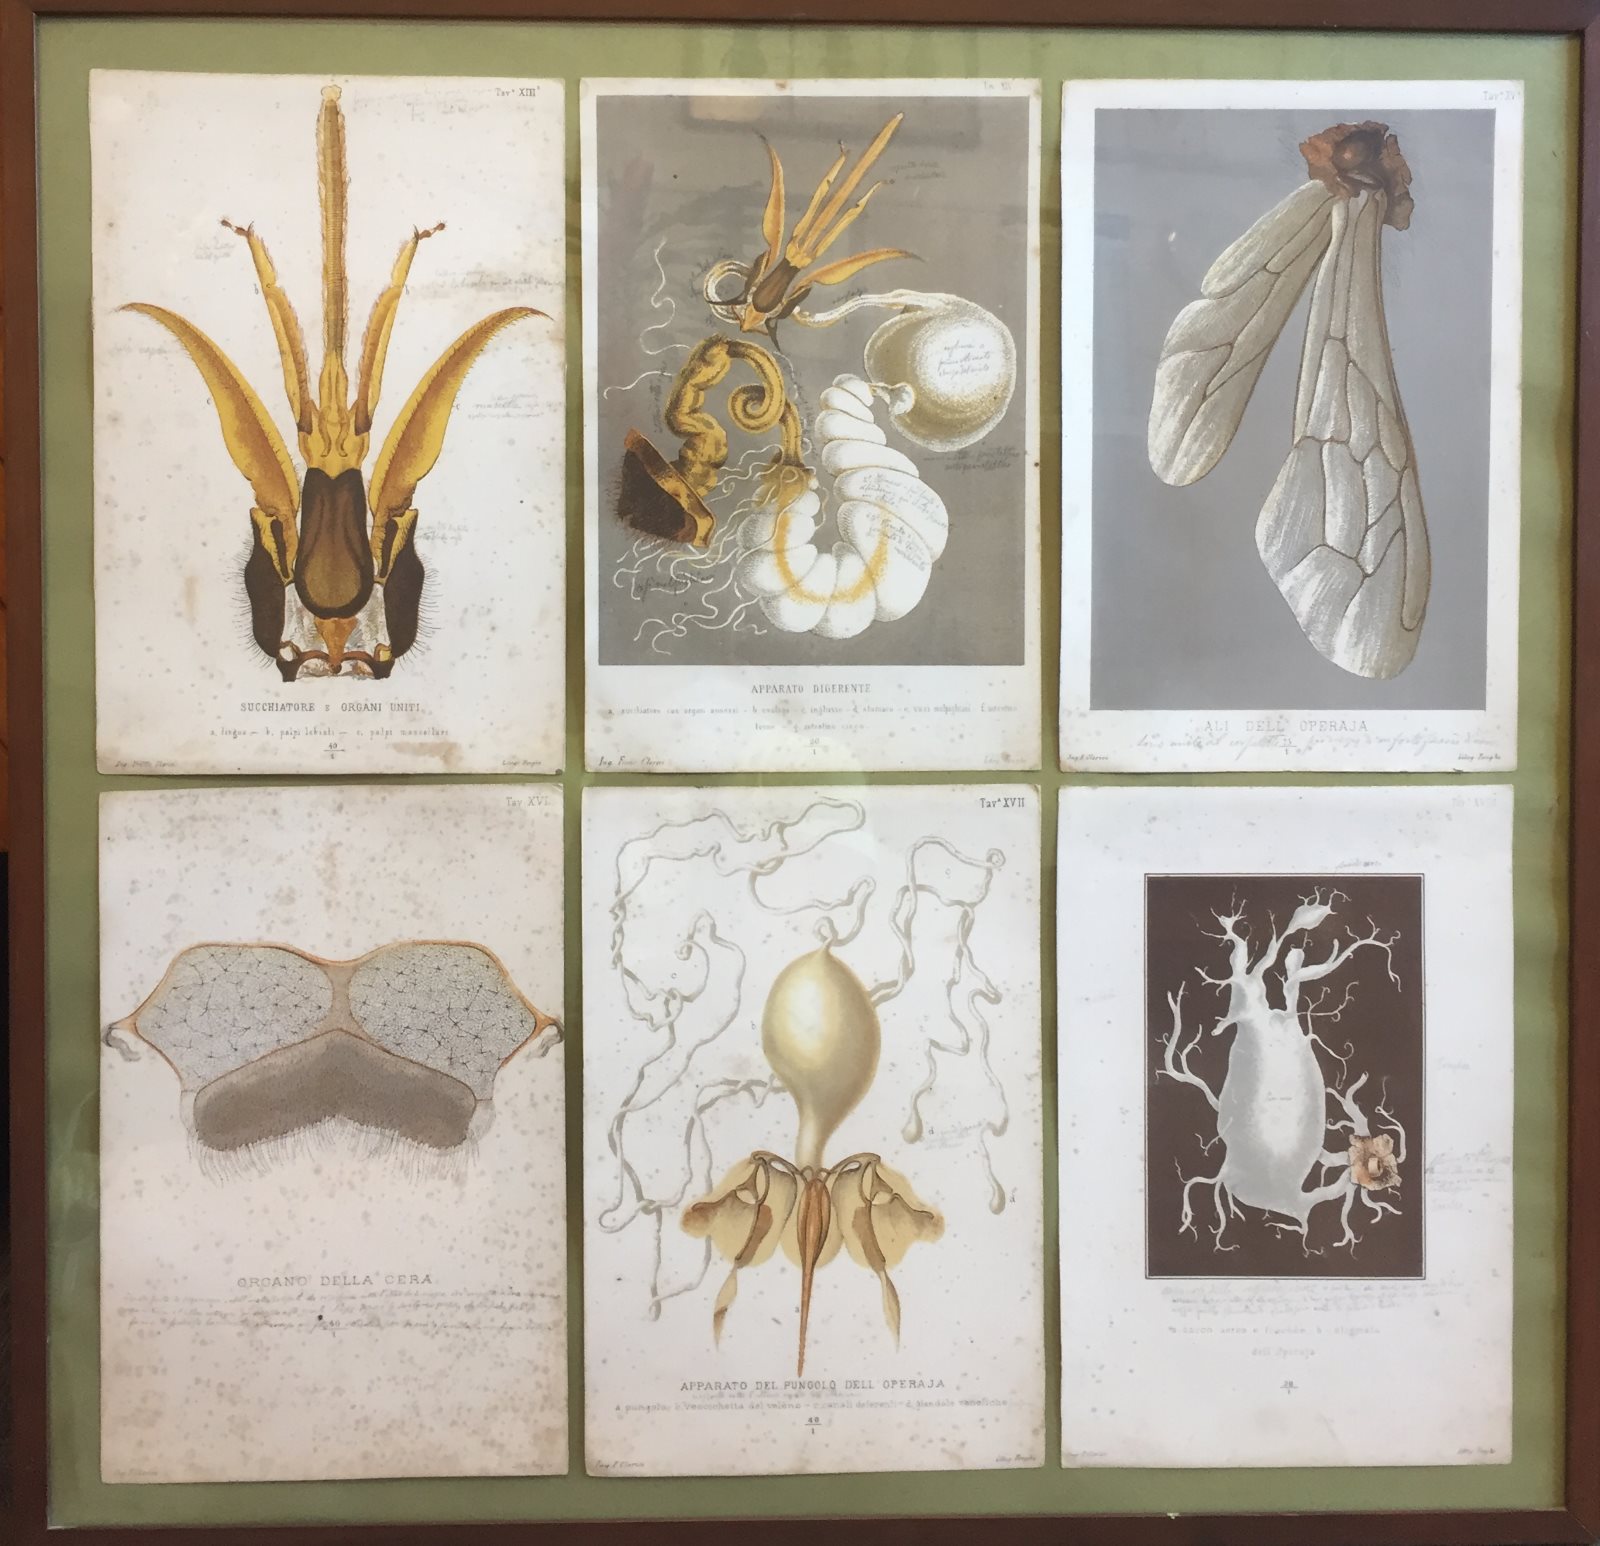 Antico libro realizzato a mano sull'anatomia dell'ape